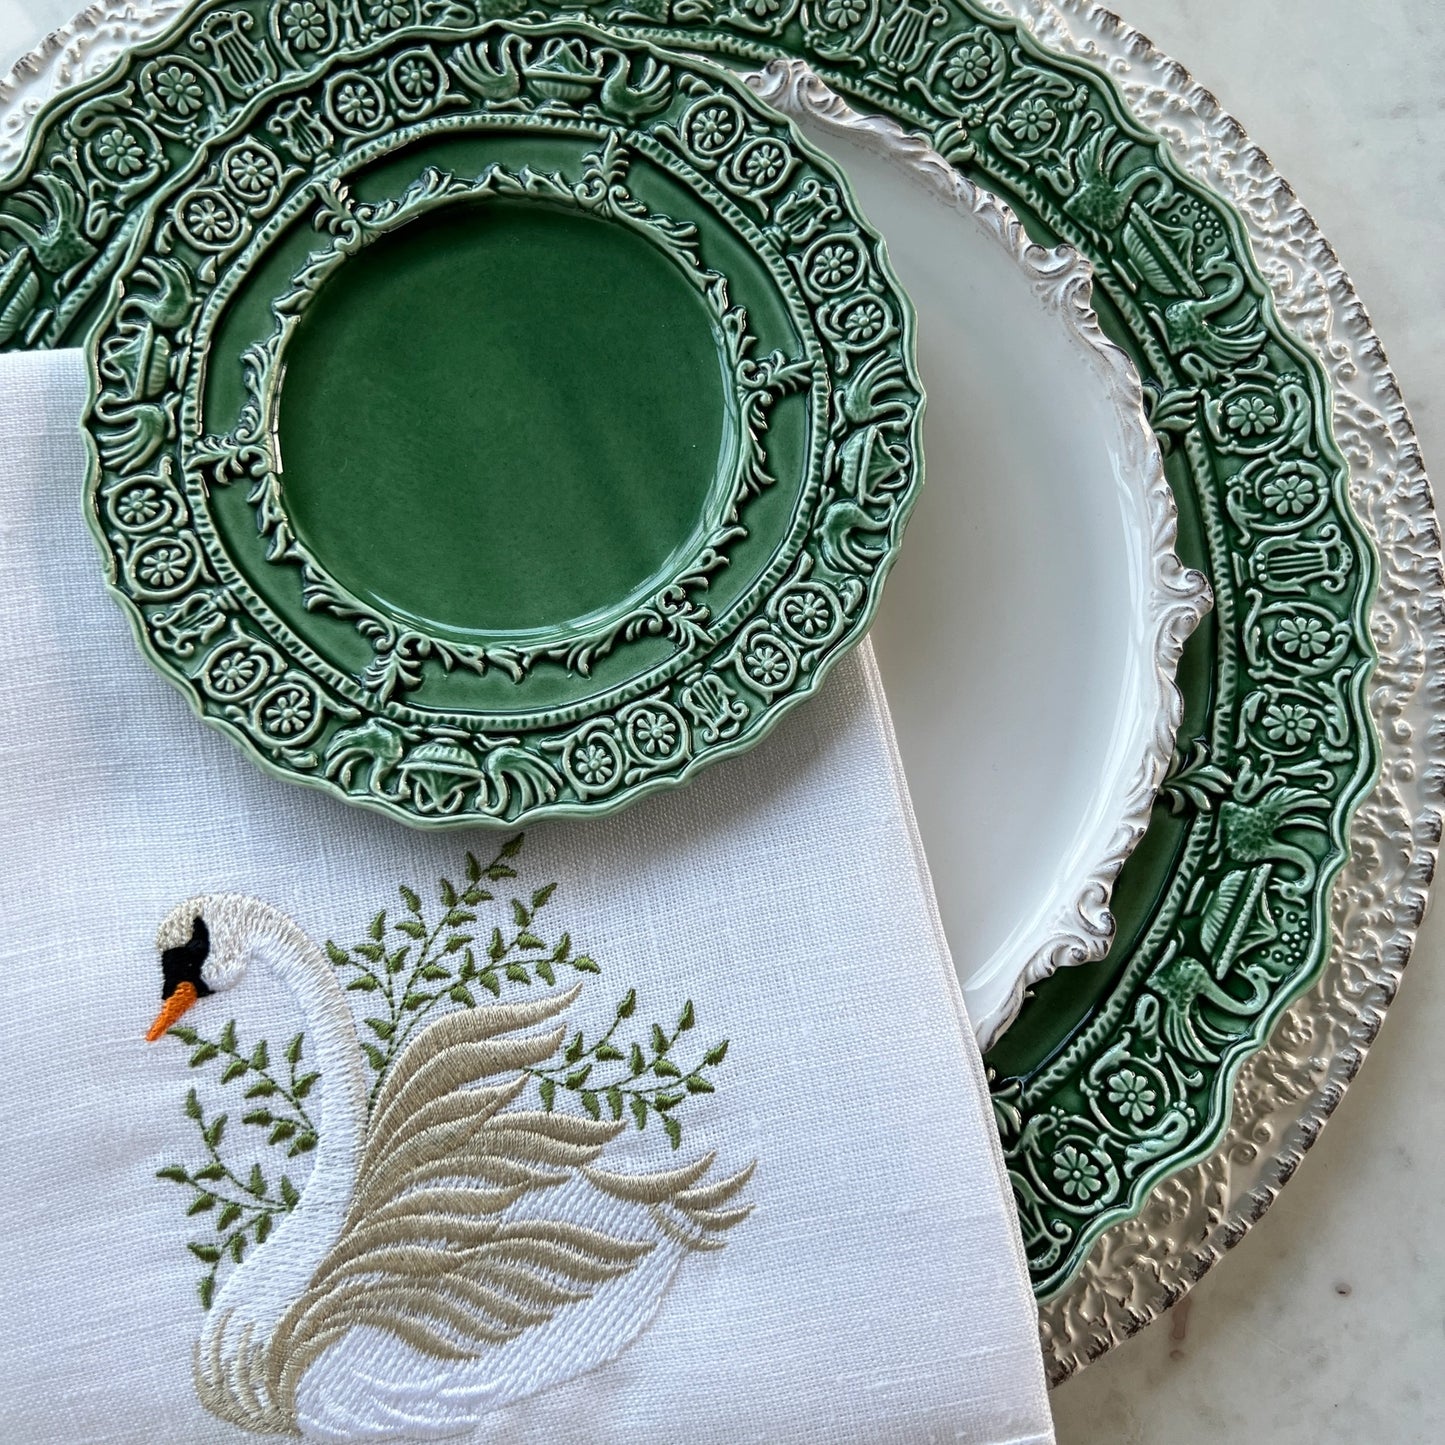 Renaissance Dinner Plate